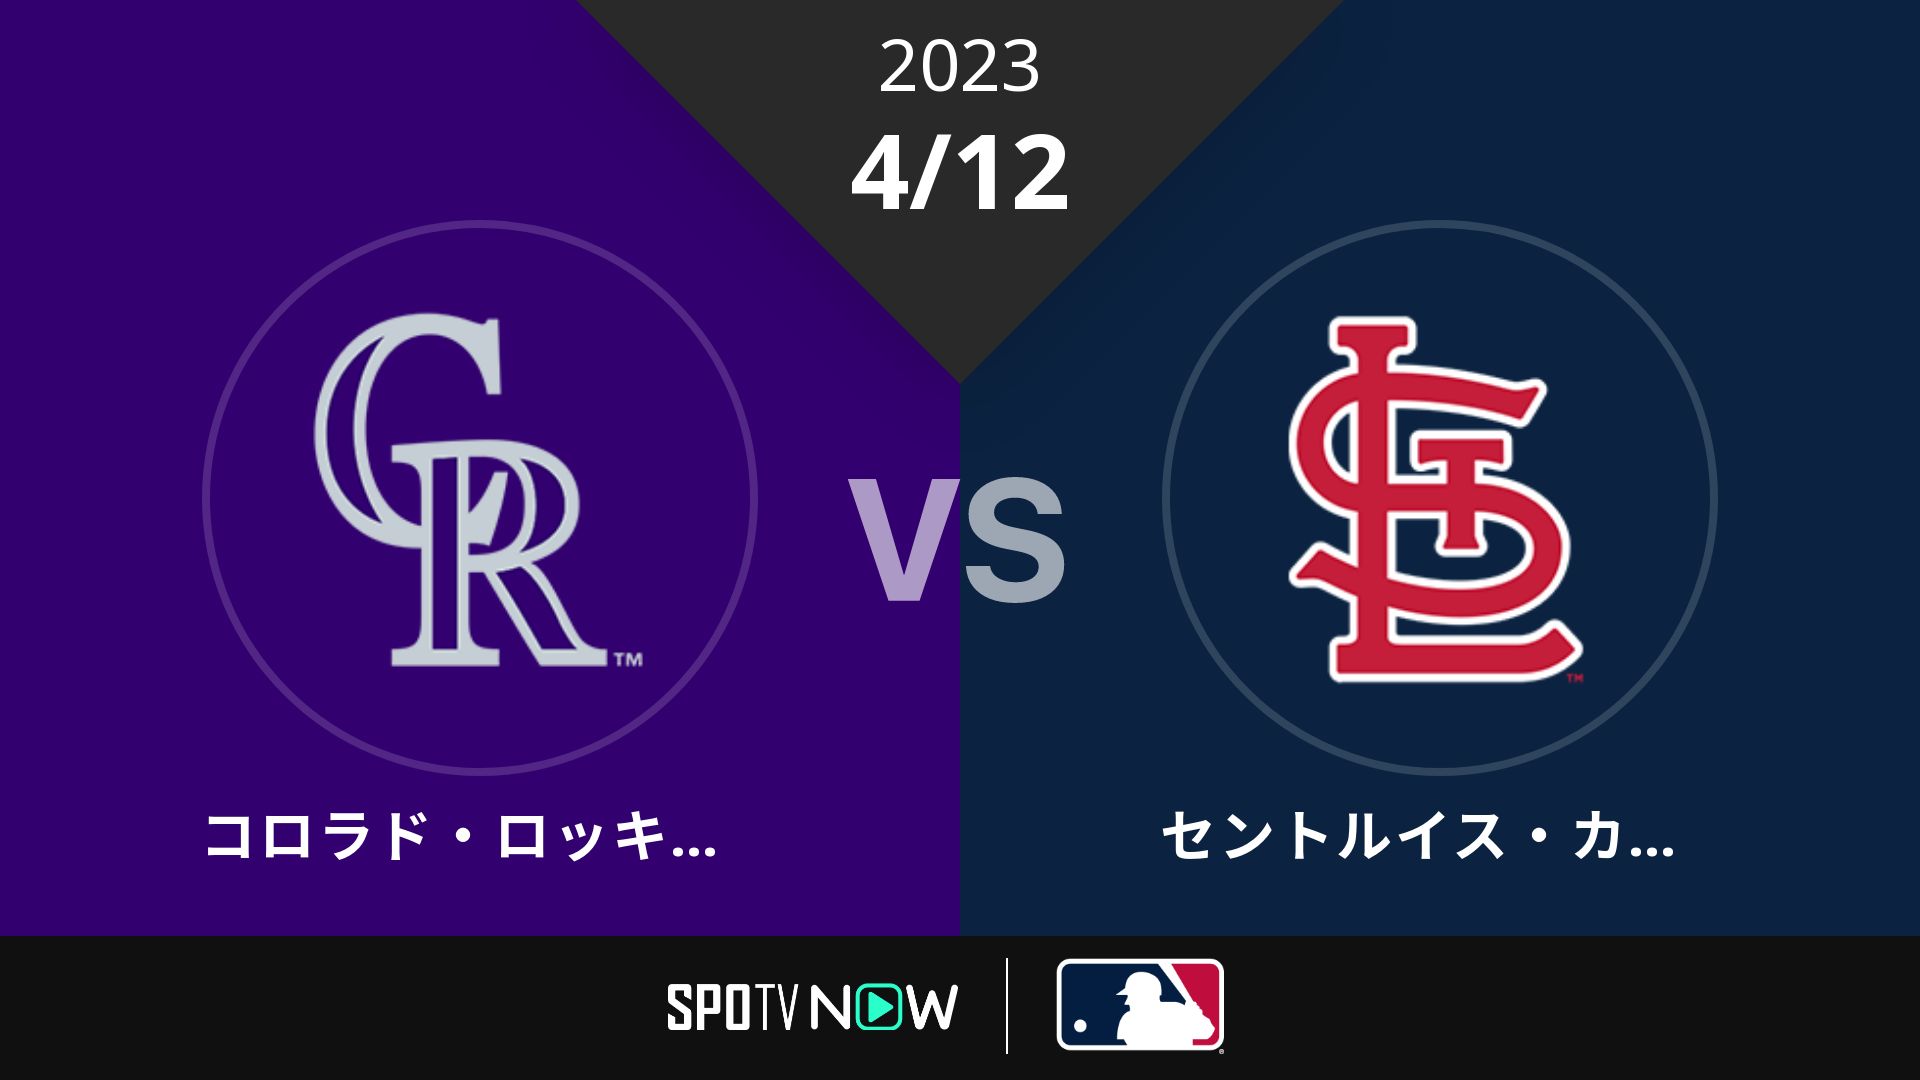 2023/4/12 ロッキーズ vs カージナルス [MLB]